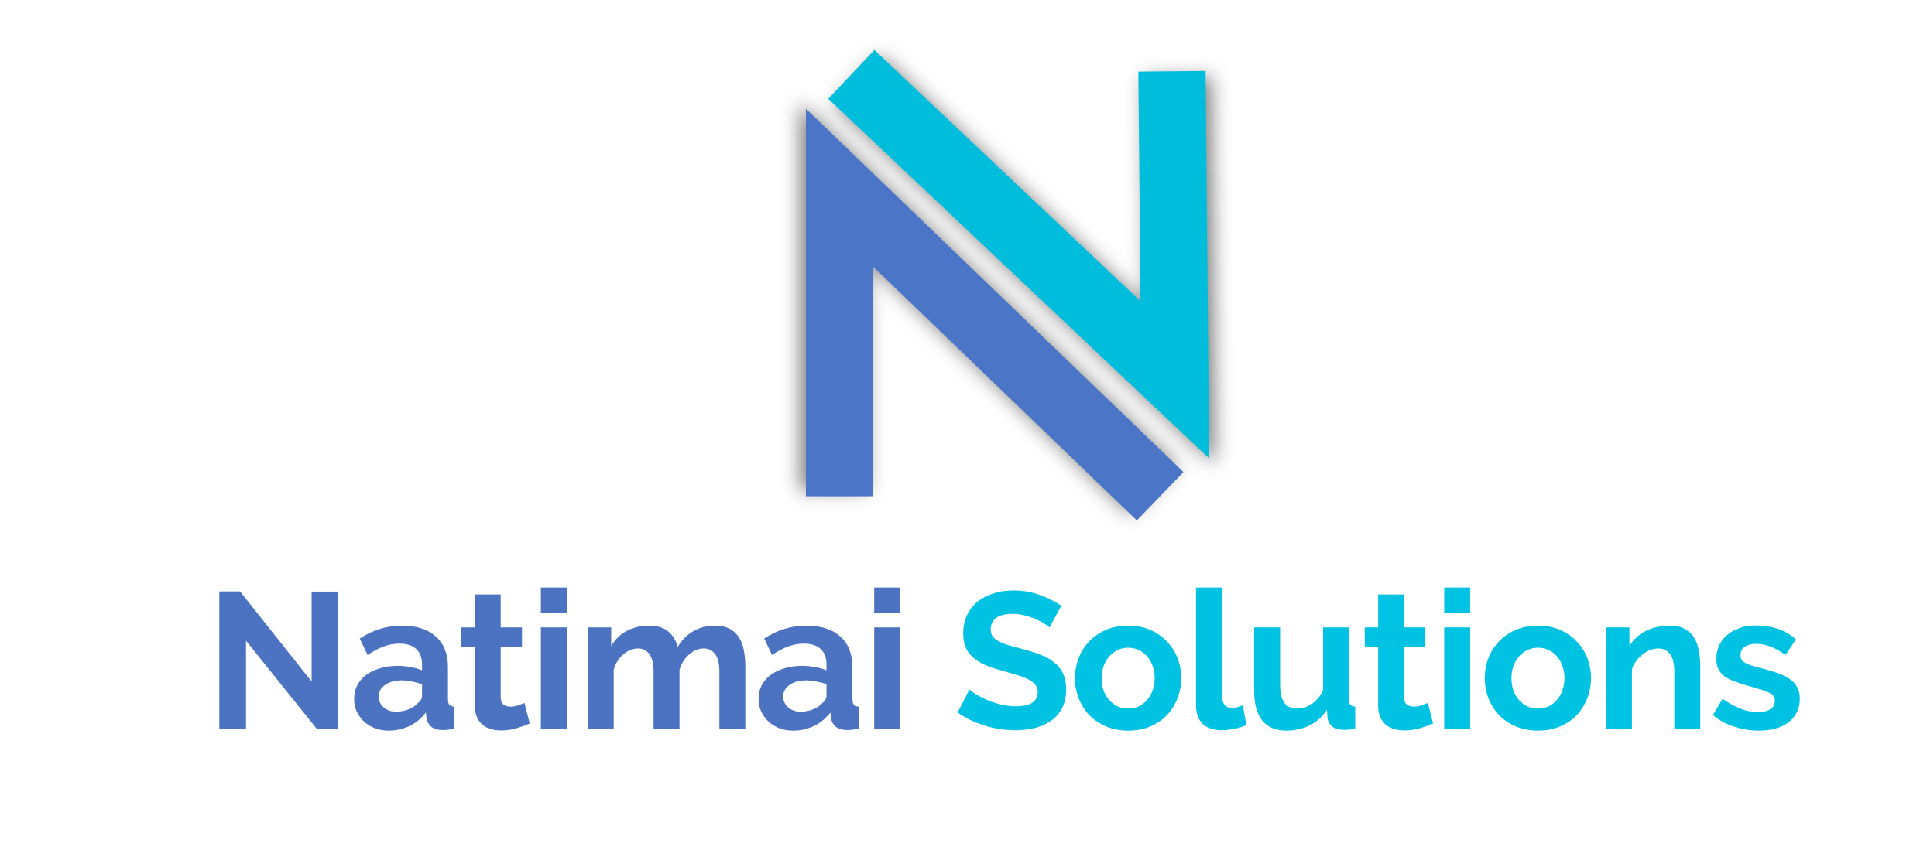 Natimai Solutions